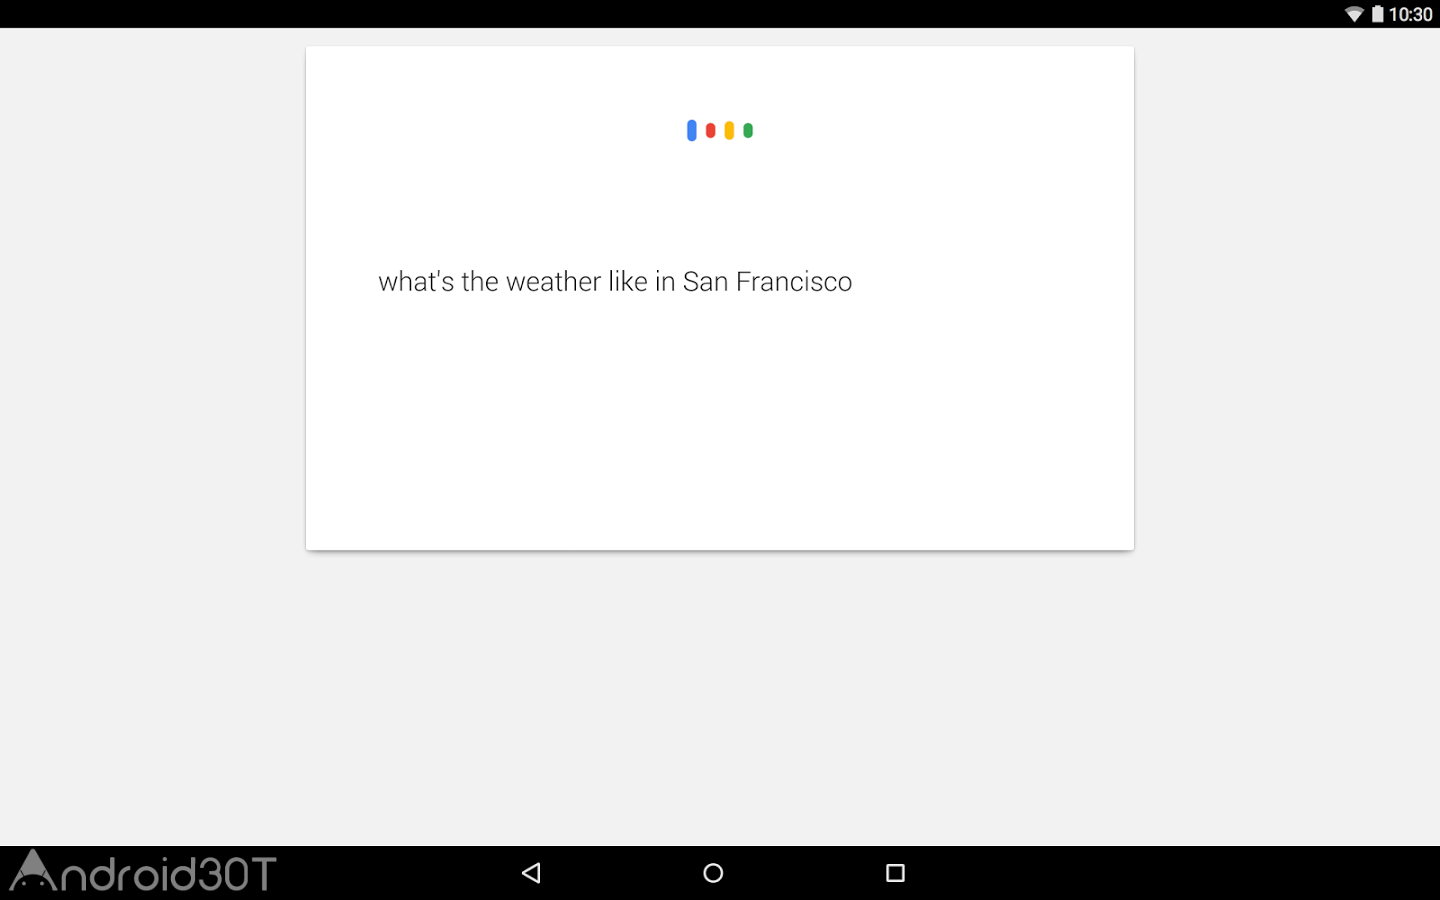 دانلود Google App 13.45.14.26 – برنامه رسمی گوگل برای موبایل اندروید